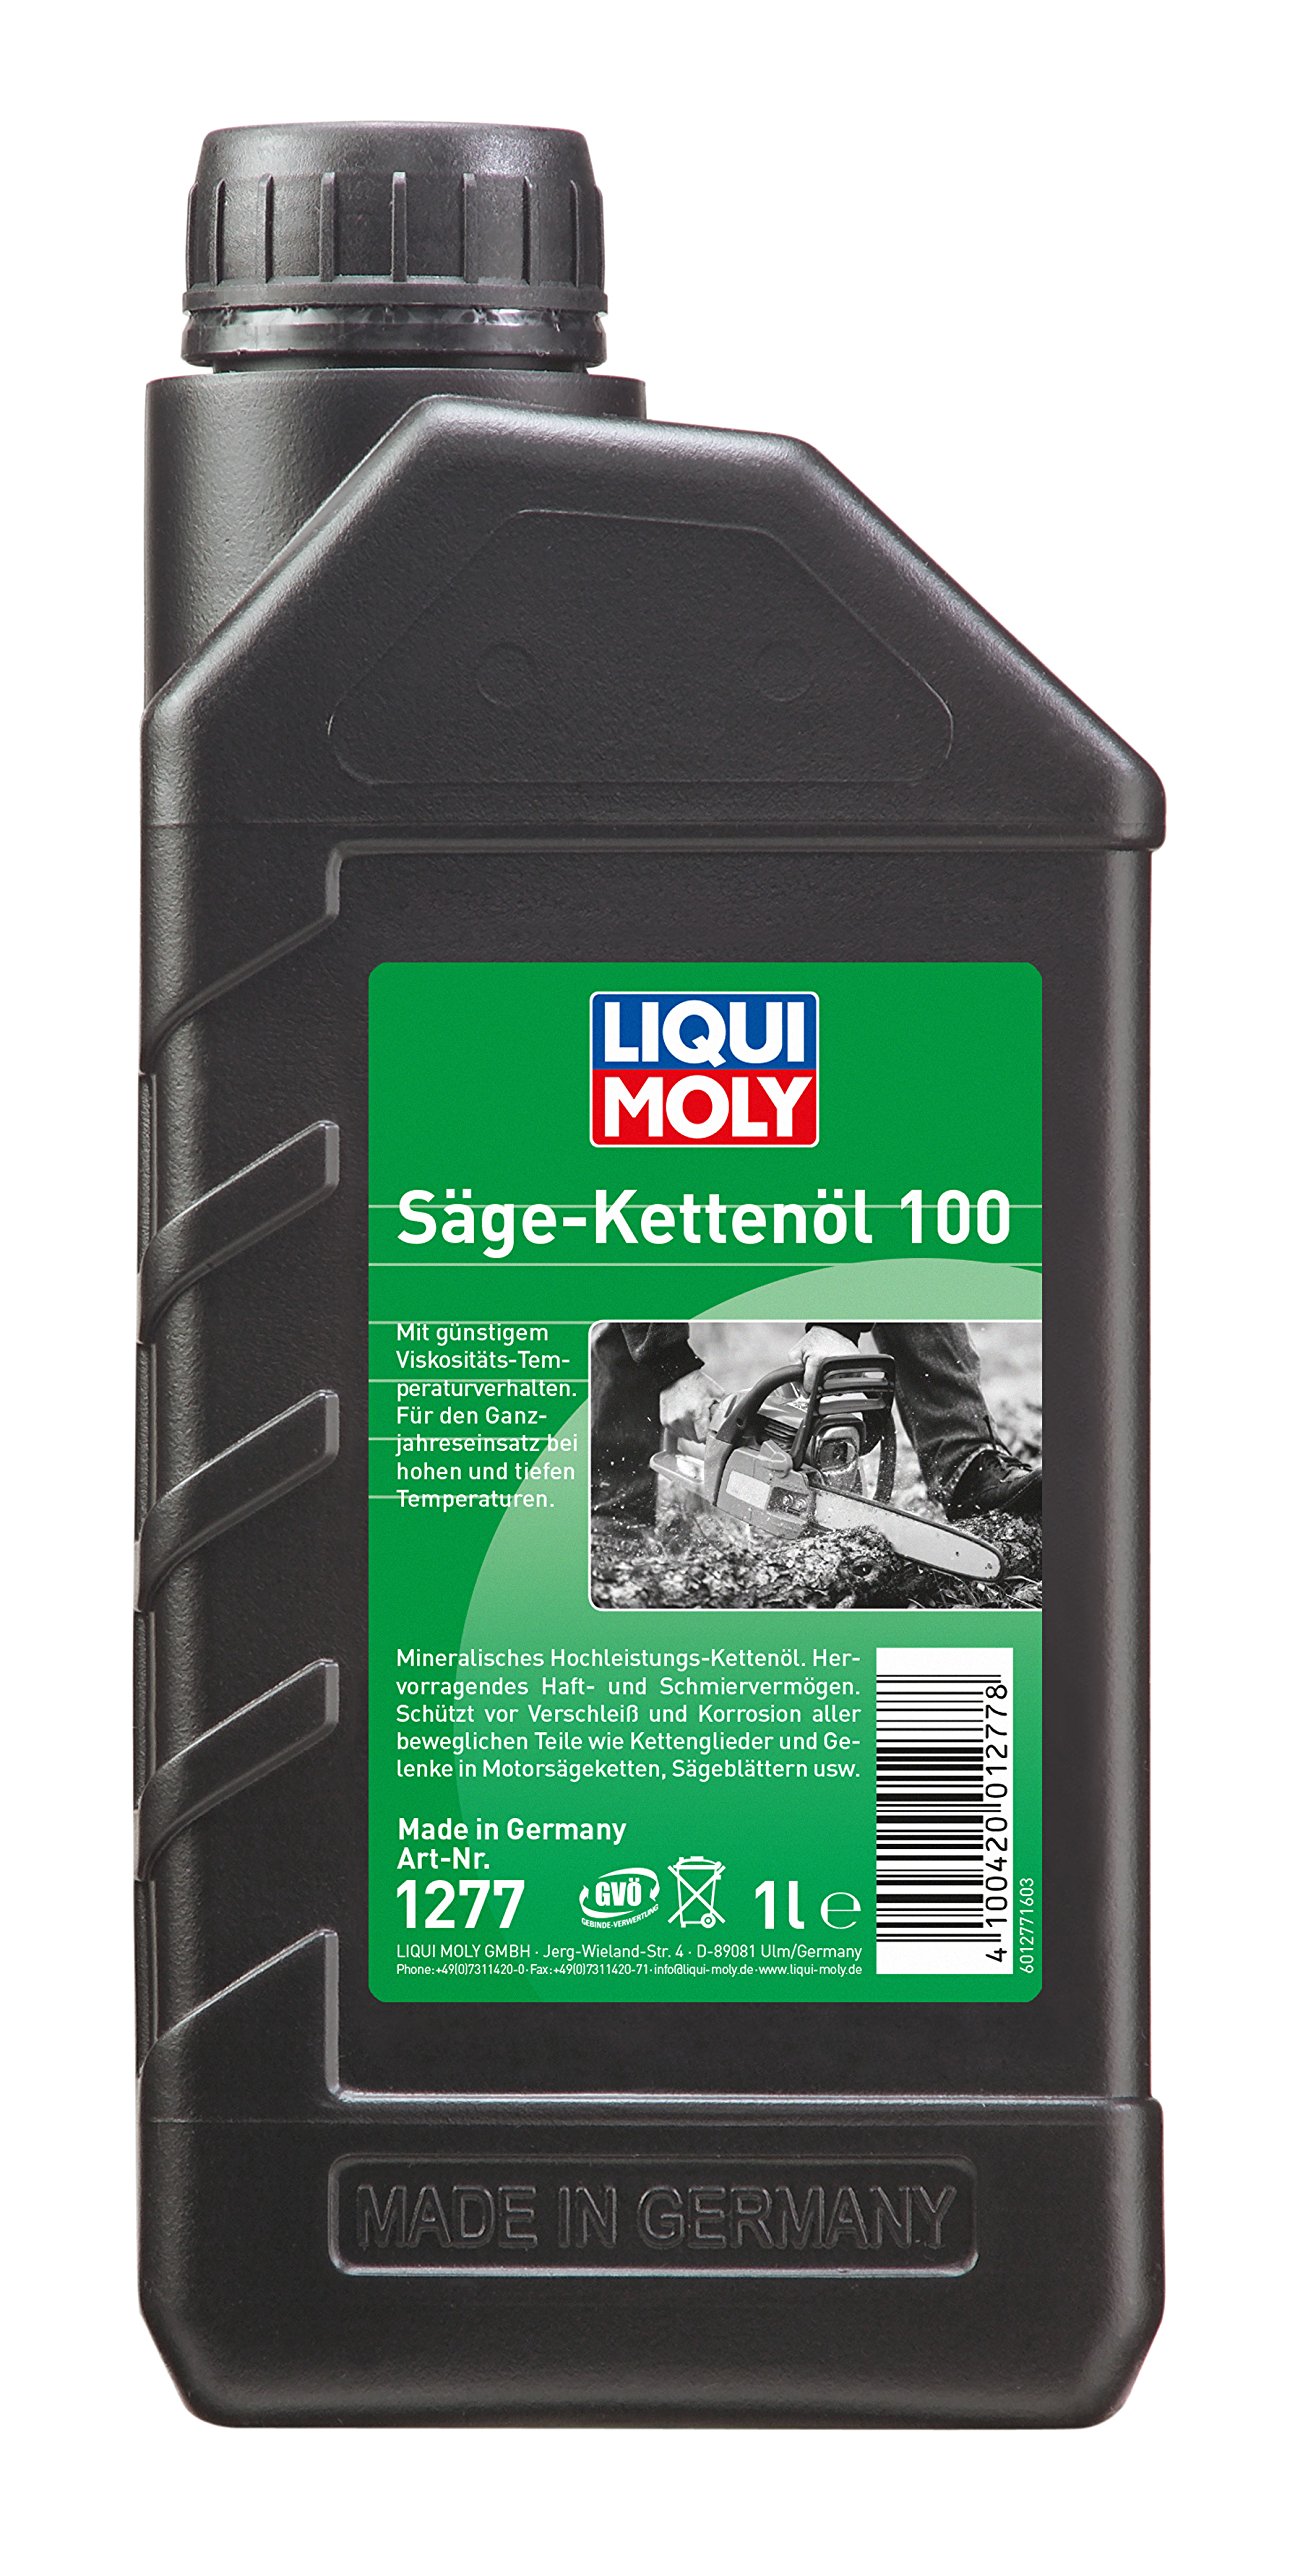 LIQUI MOLY Sägekettenöl 100 | 1 L | Gartengeräte-Öl | Art.-Nr.: 1277 von Liqui Moly